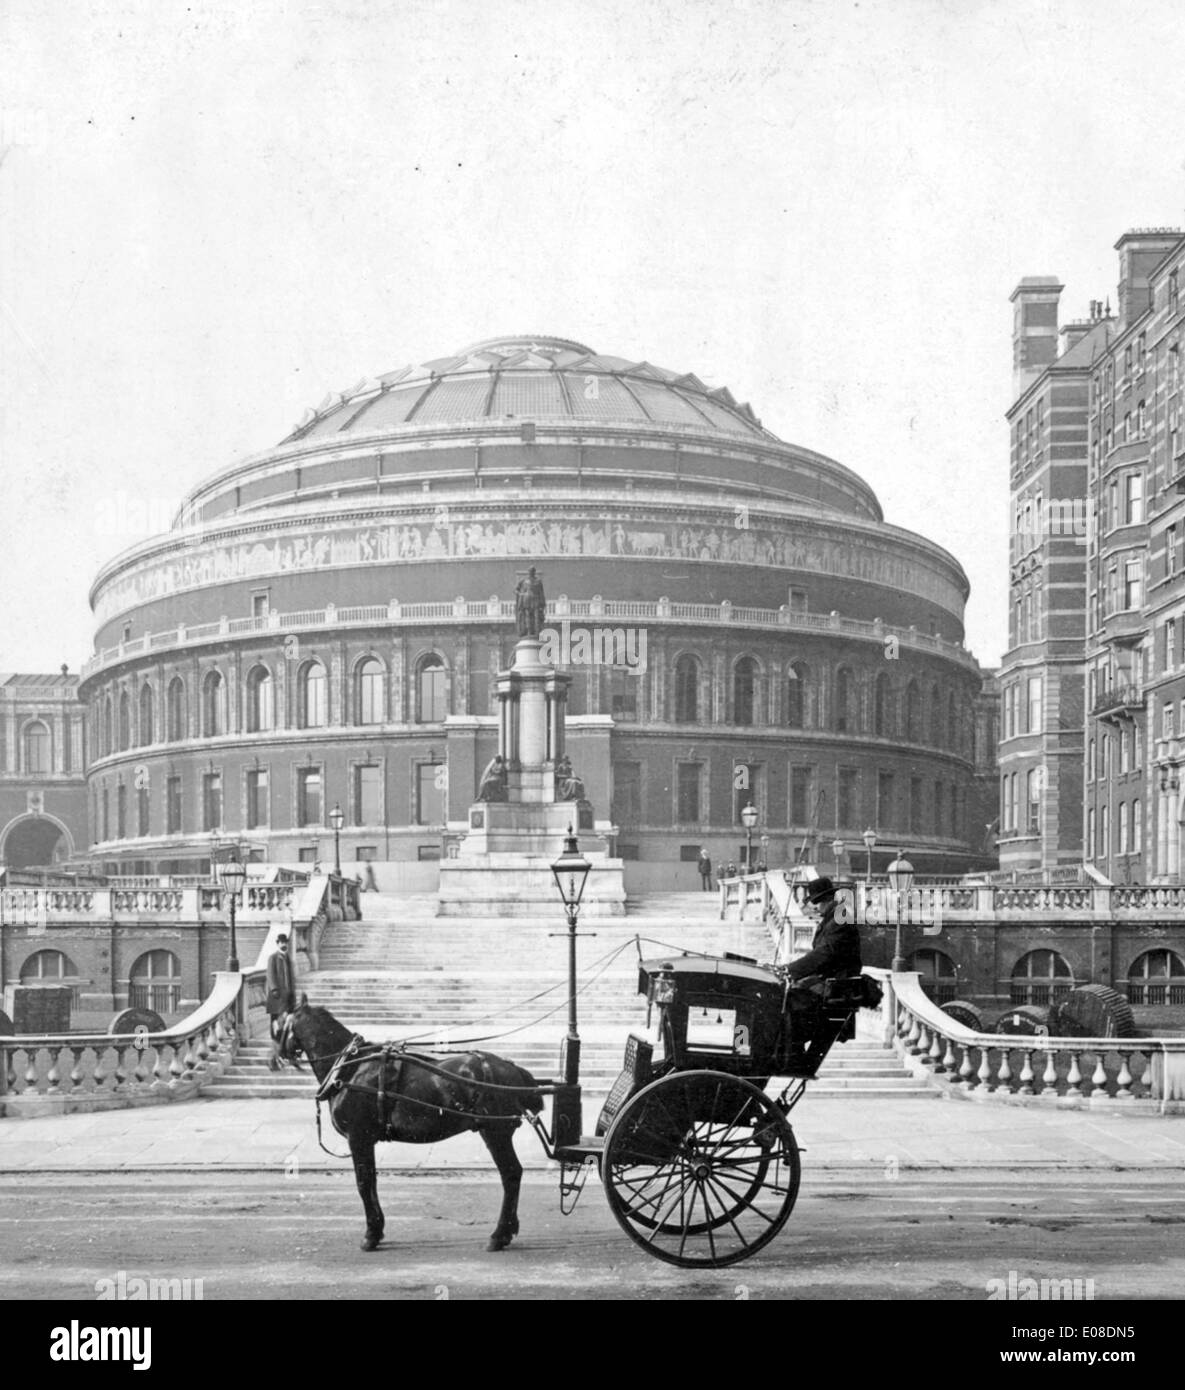 Albert Hall historique et Hansom Cab, London, England, UK Banque D'Images